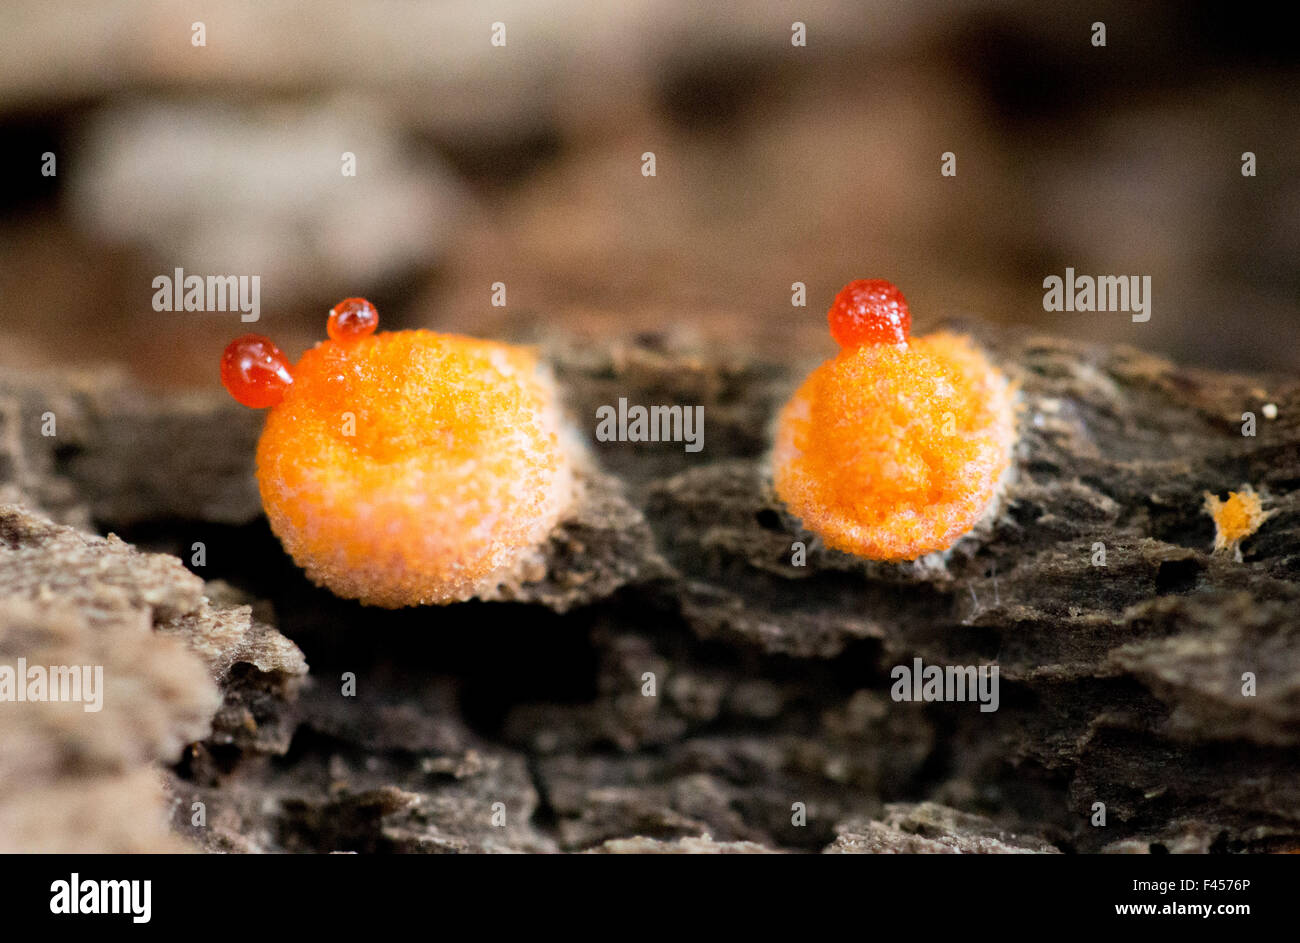 Slime mold bursting Lycogala epidendrum Stock Photo